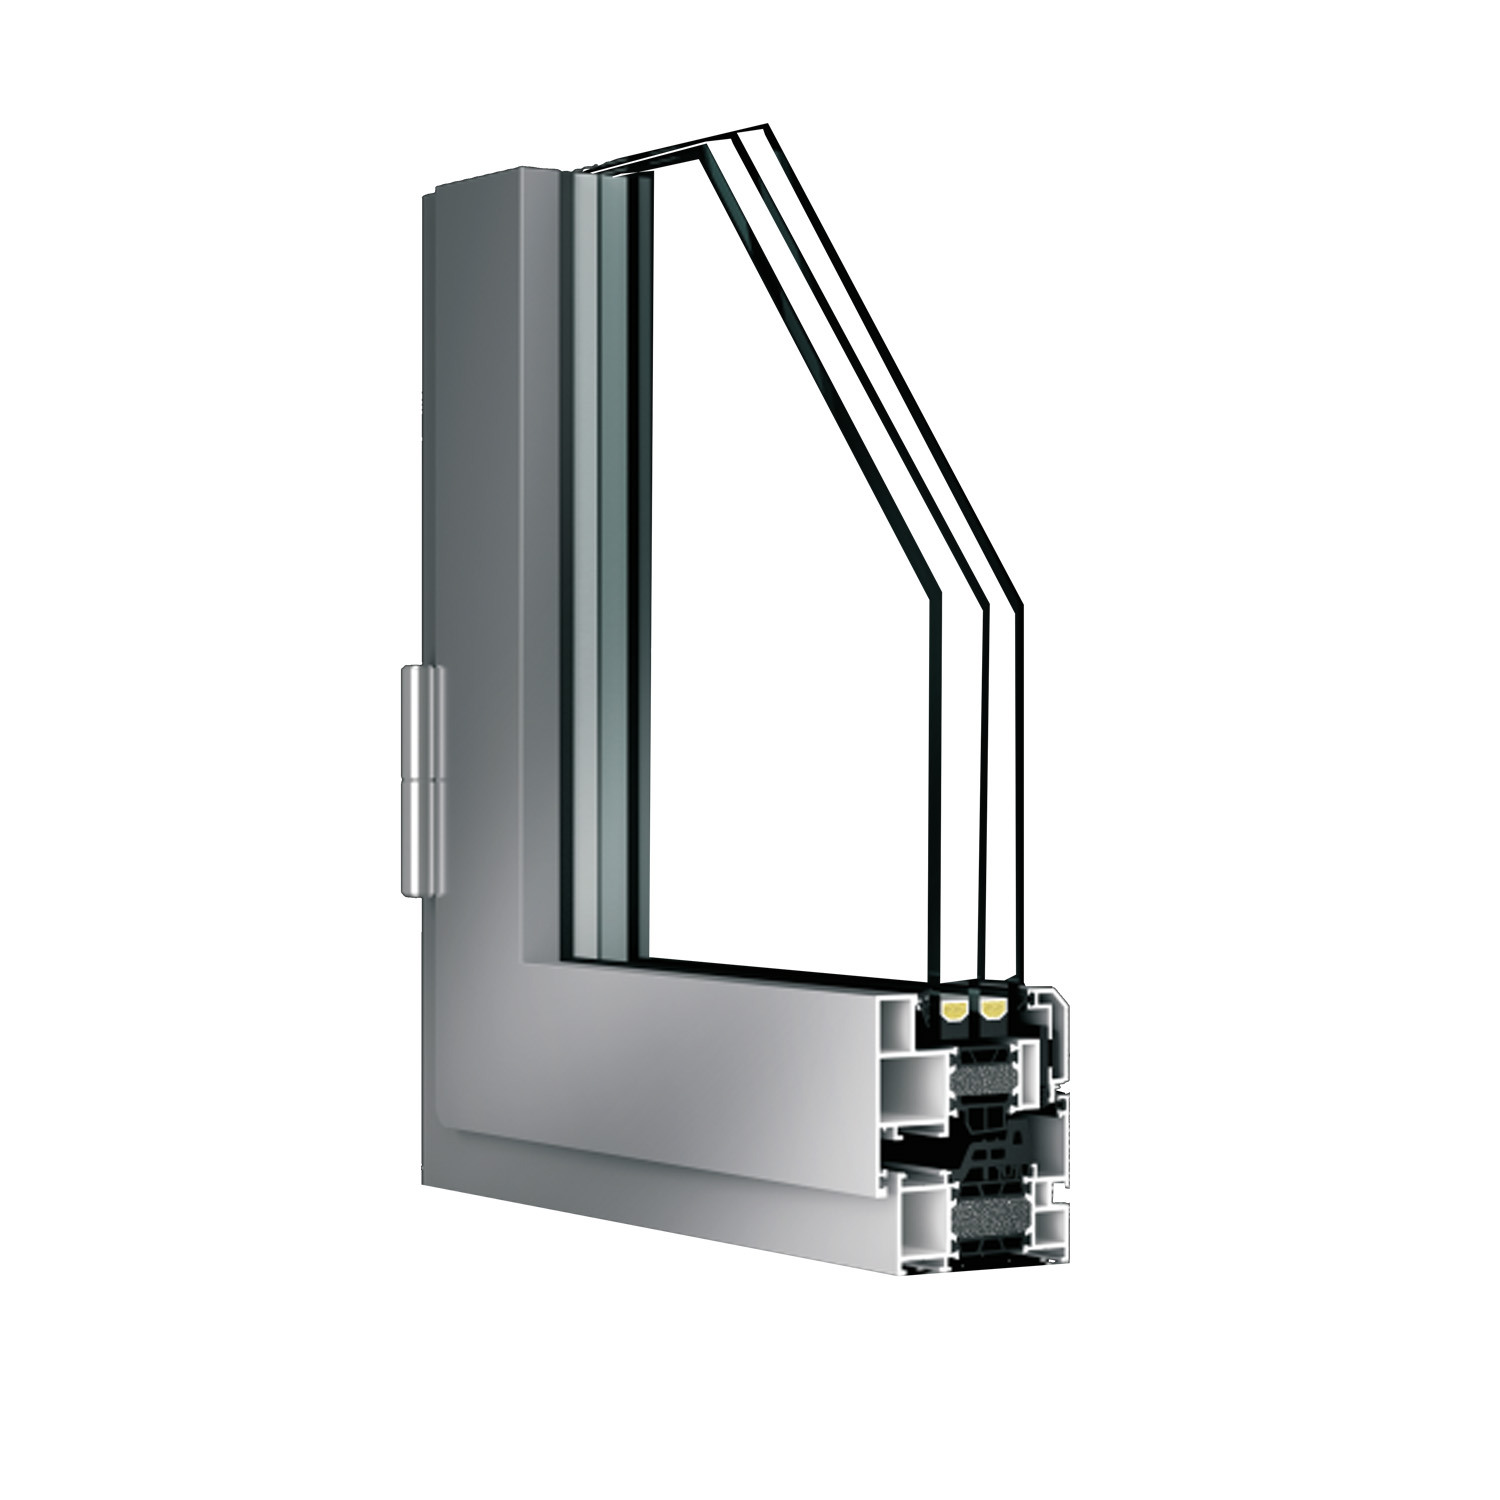 Aluminium Profile Building Material Window and door Featured Image